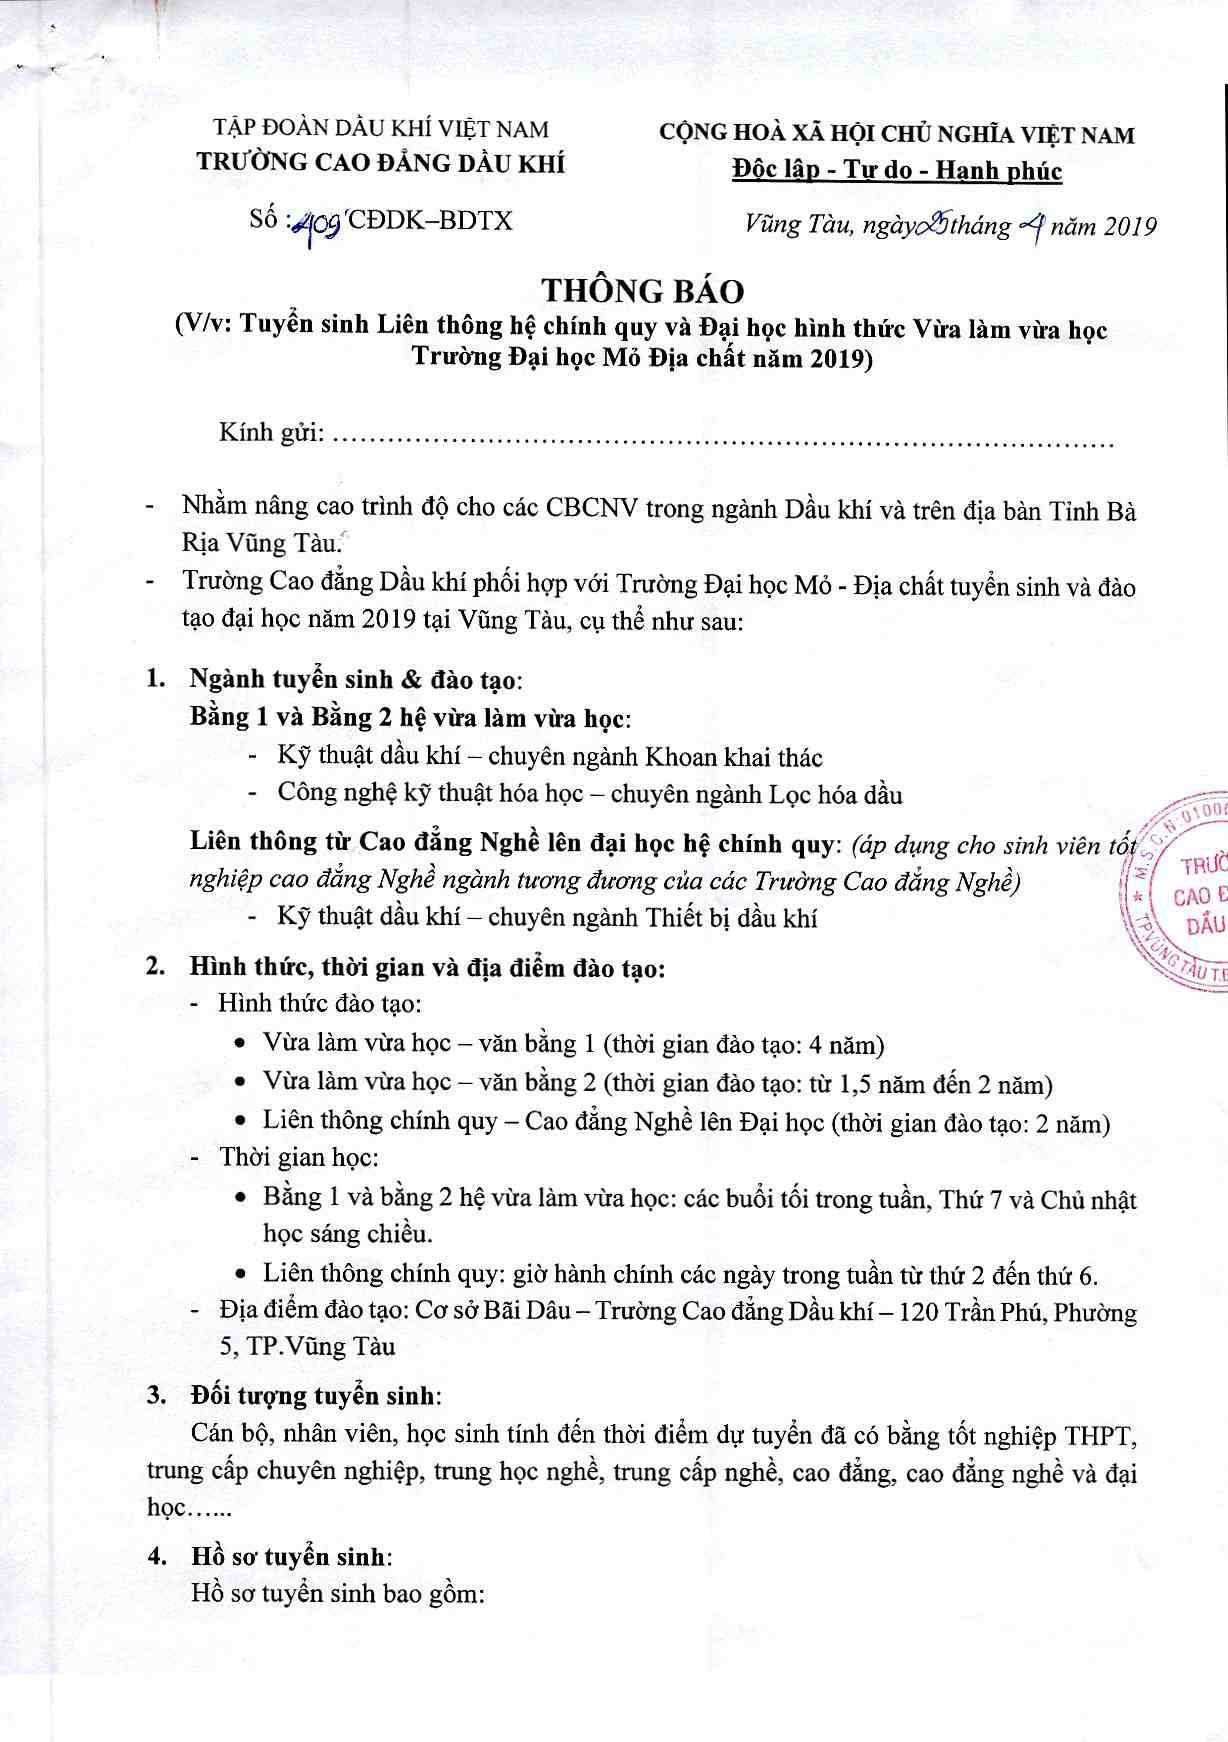 Thong Bao Tuyen Sinh Lien Thong Dh Mo Dc 2019 Page 1 Image 0001